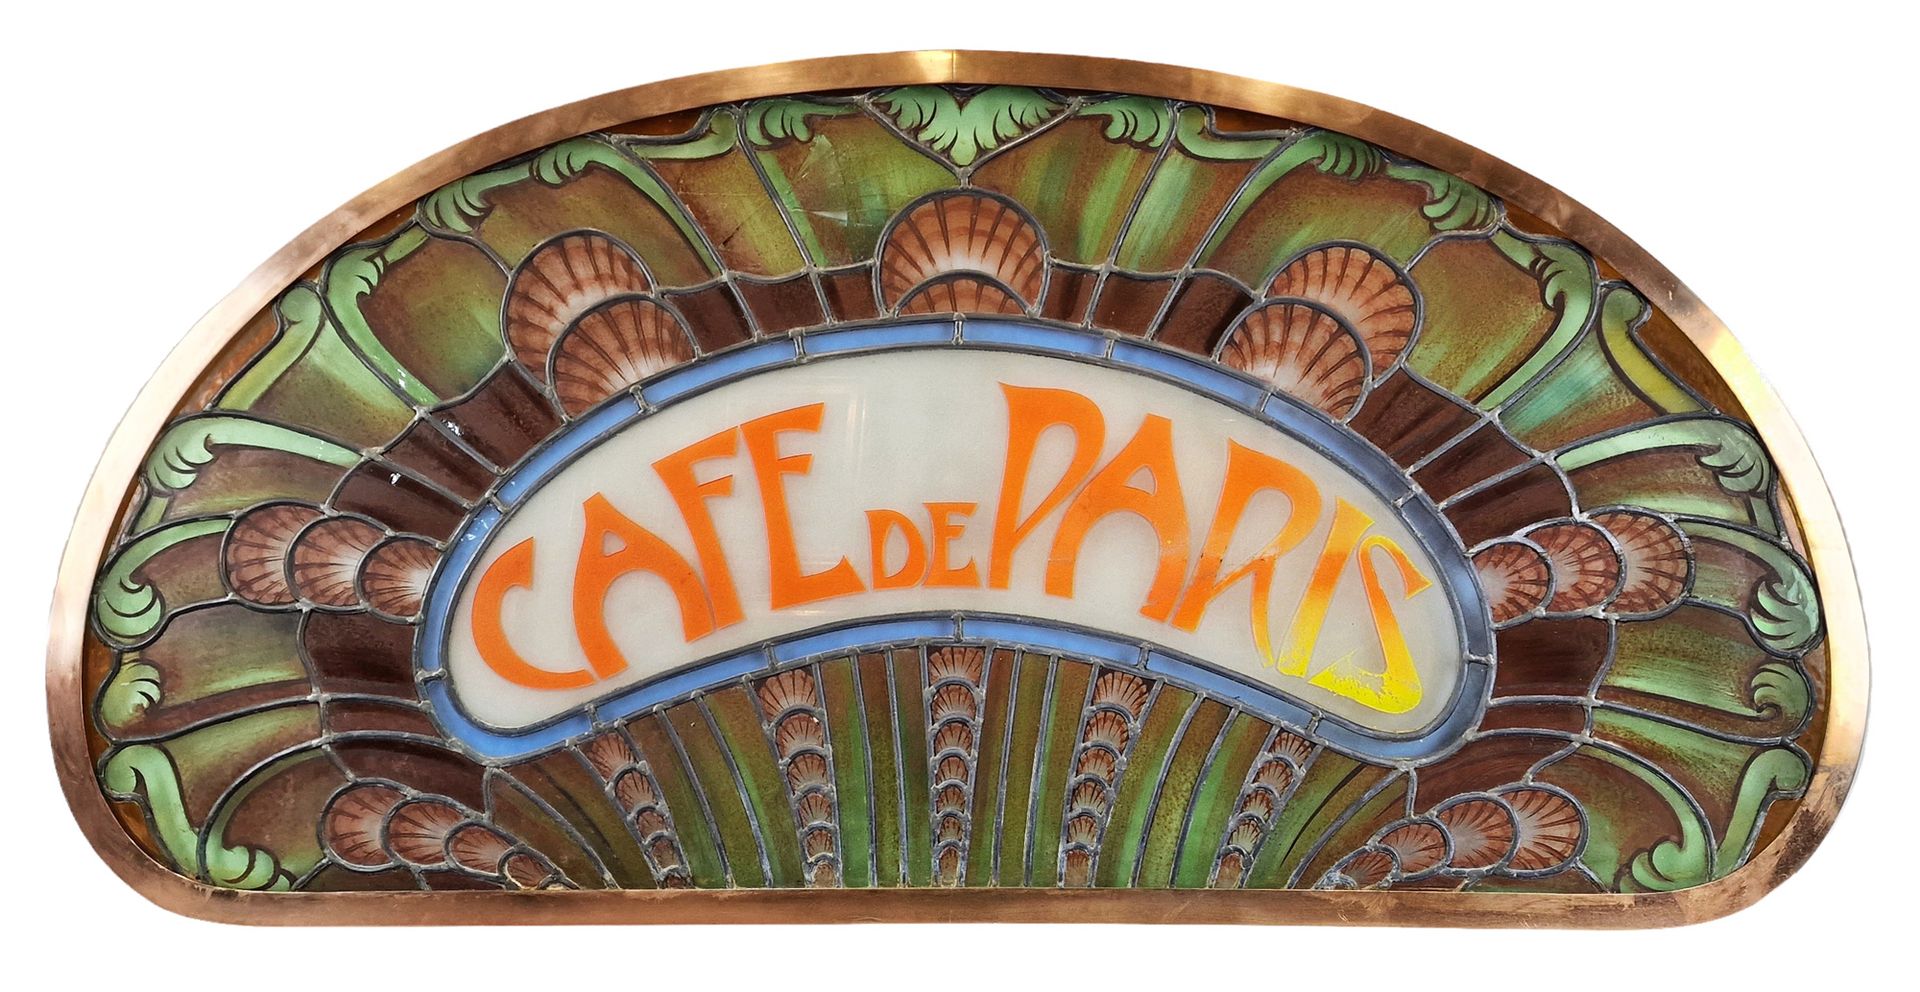 CAFE DE PARIS CAFE DE PARIS

Important stained glass window in the Art Nouveau s&hellip;